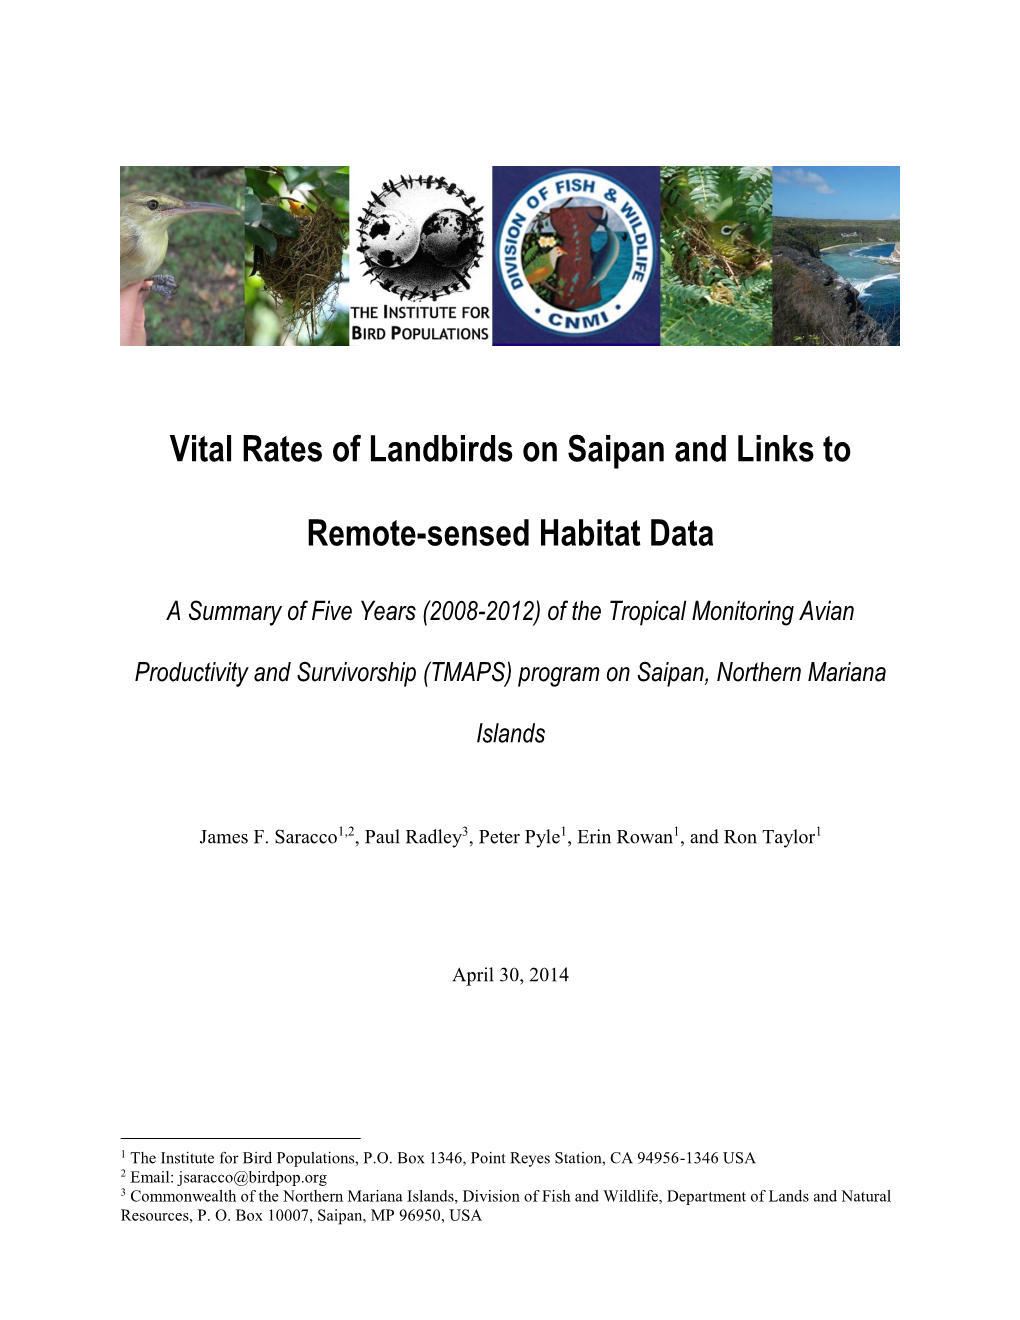 Landbird Vital Rates on Saipan